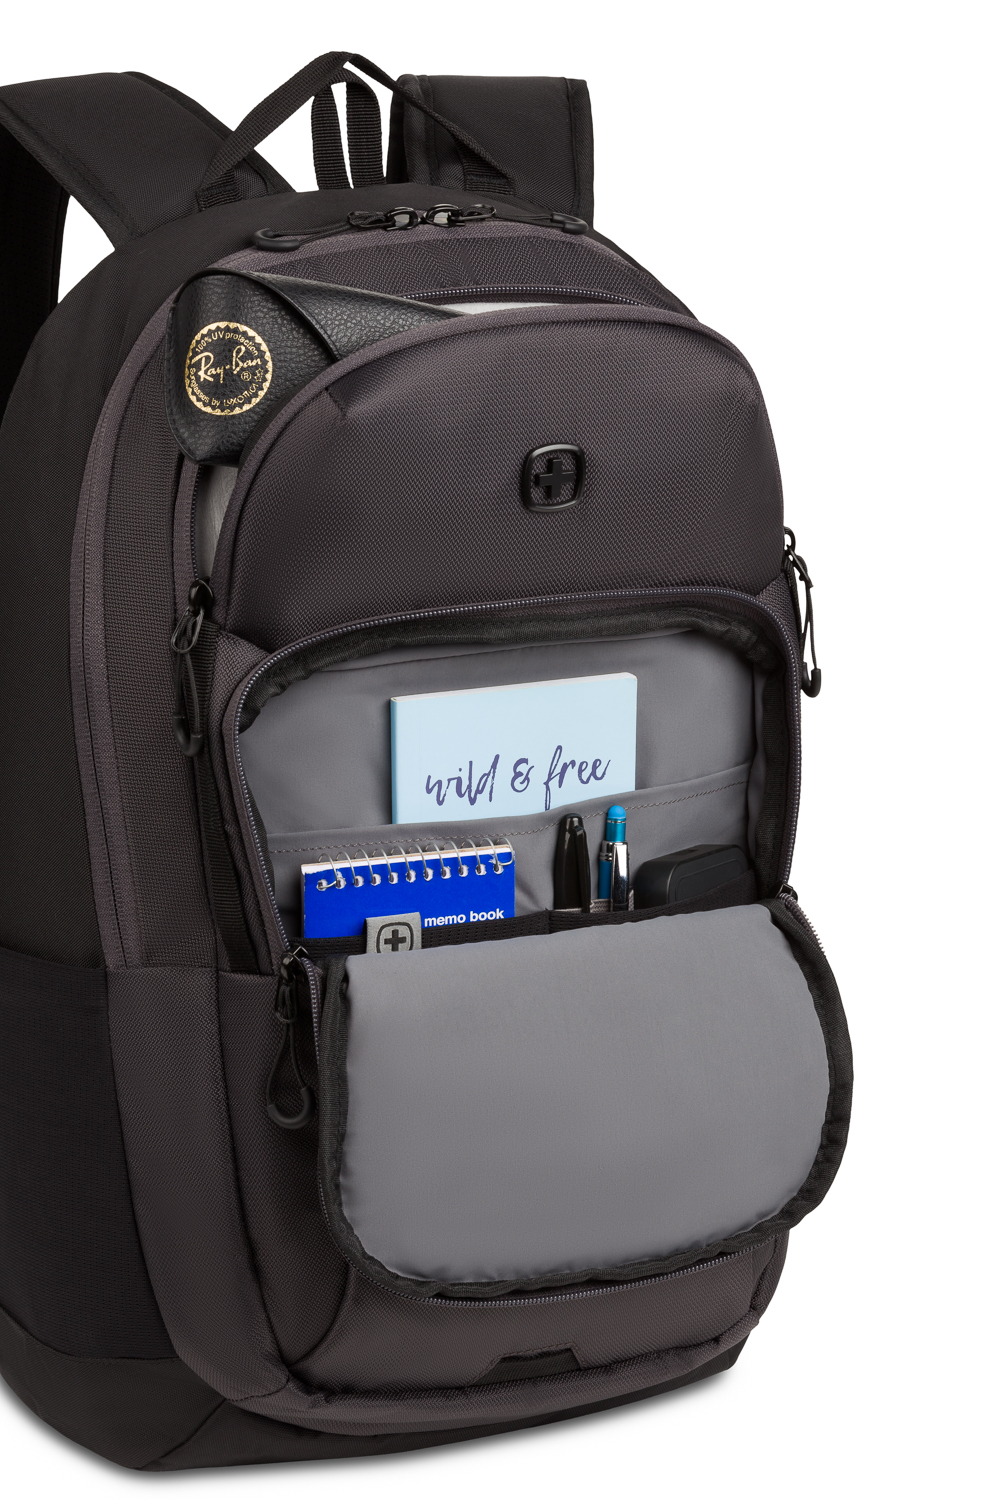 Swissgear 8171 16 Laptop backpack - Black/Gray